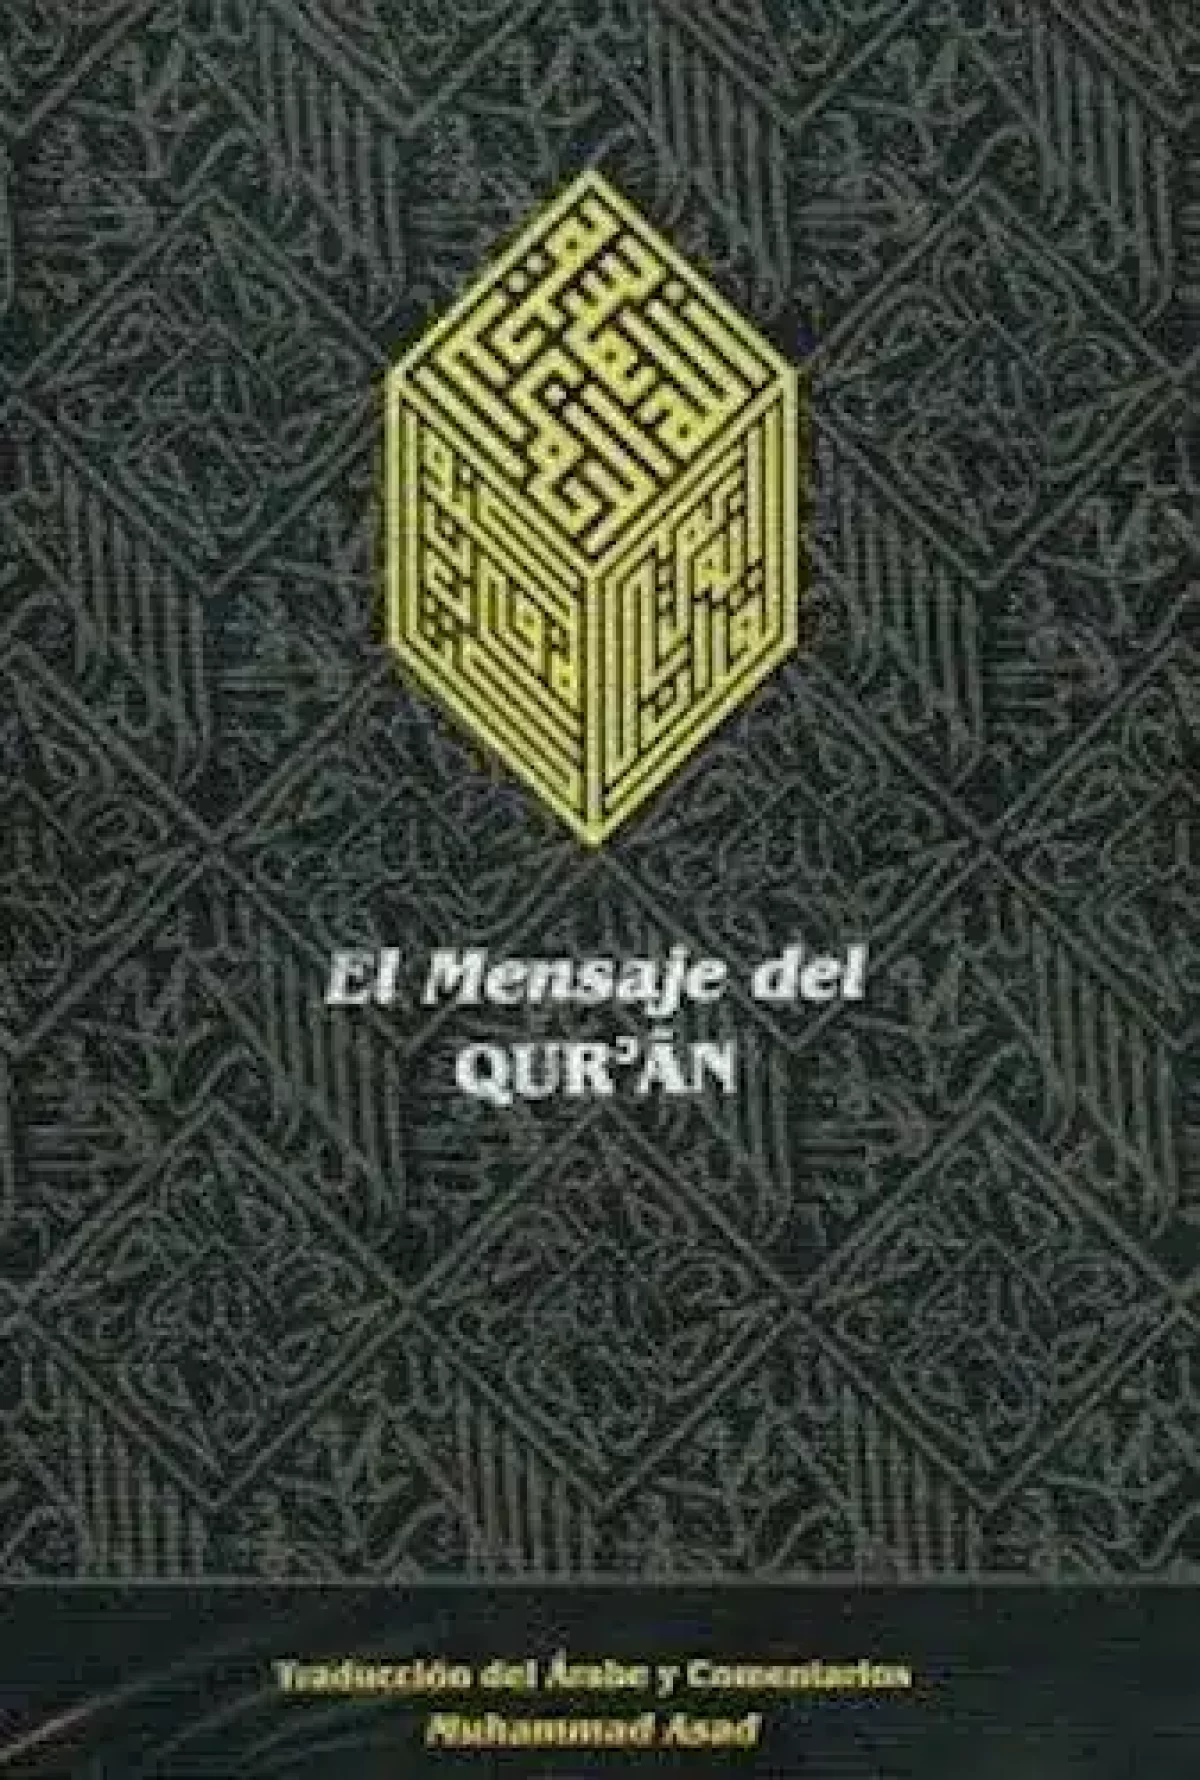 El Corán: El Sagrado Corán en español claro y fácil de leer (Paperback)